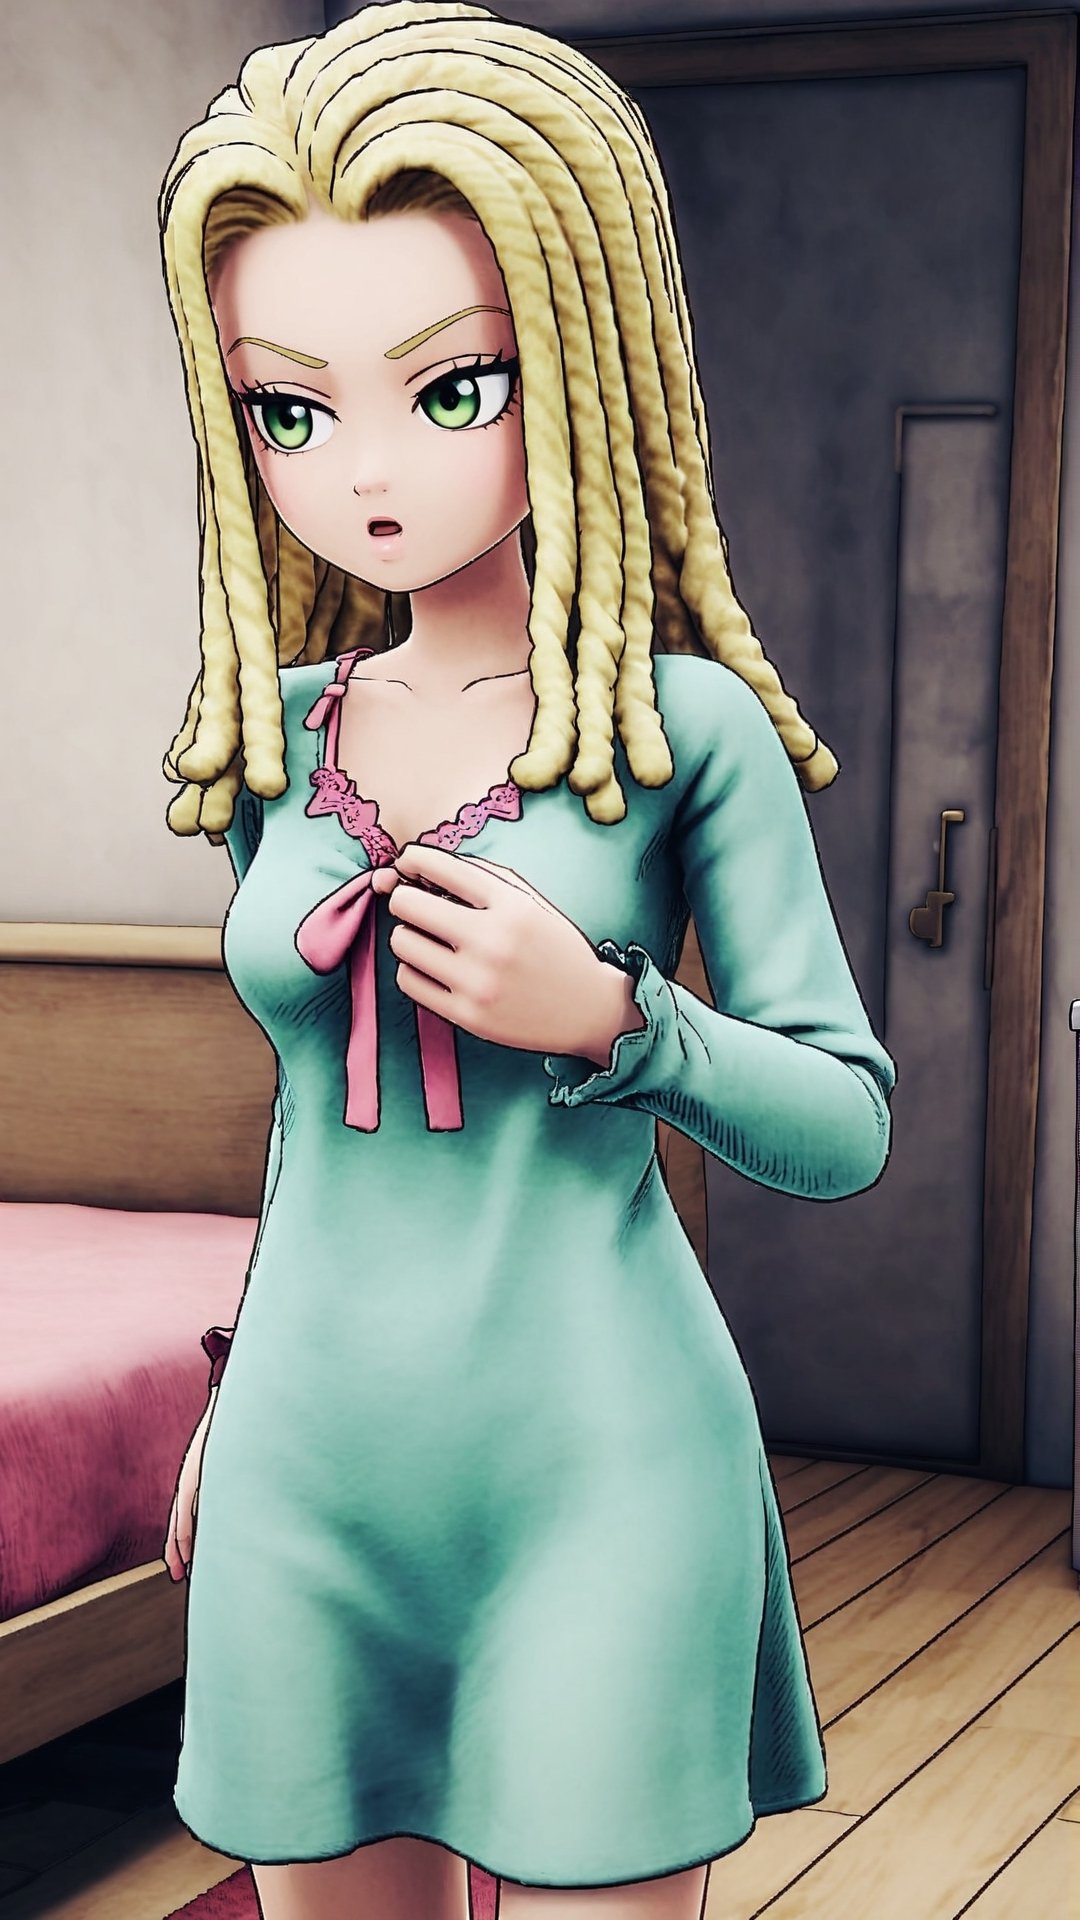 Ann, blonde hair, reggae hair style, shoulder length hair, green eyes, nightgown, in bedroom